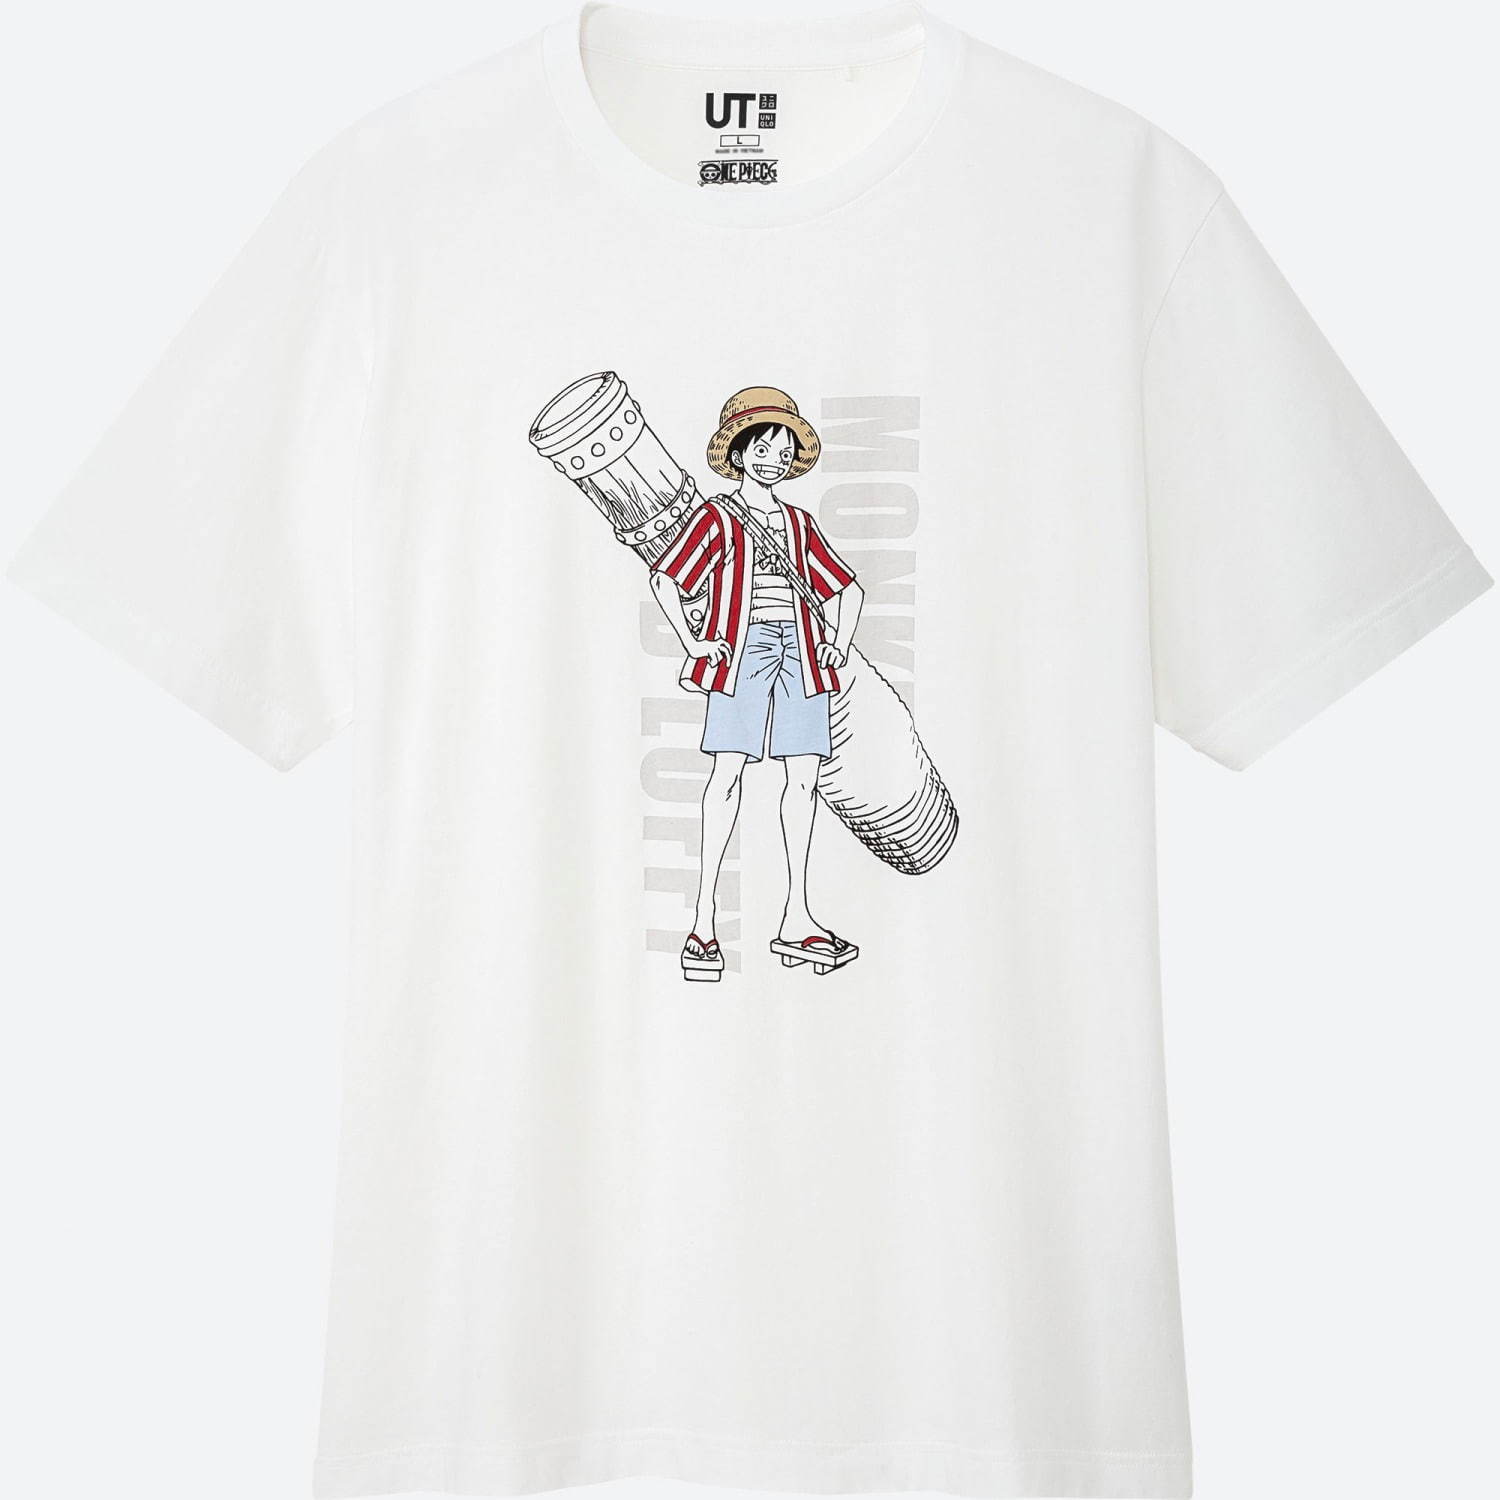 ユニクロ「UT」×ワンピース劇場版『ONE PIECE STAMPEDE』劇中に登場するTシャツも | 写真